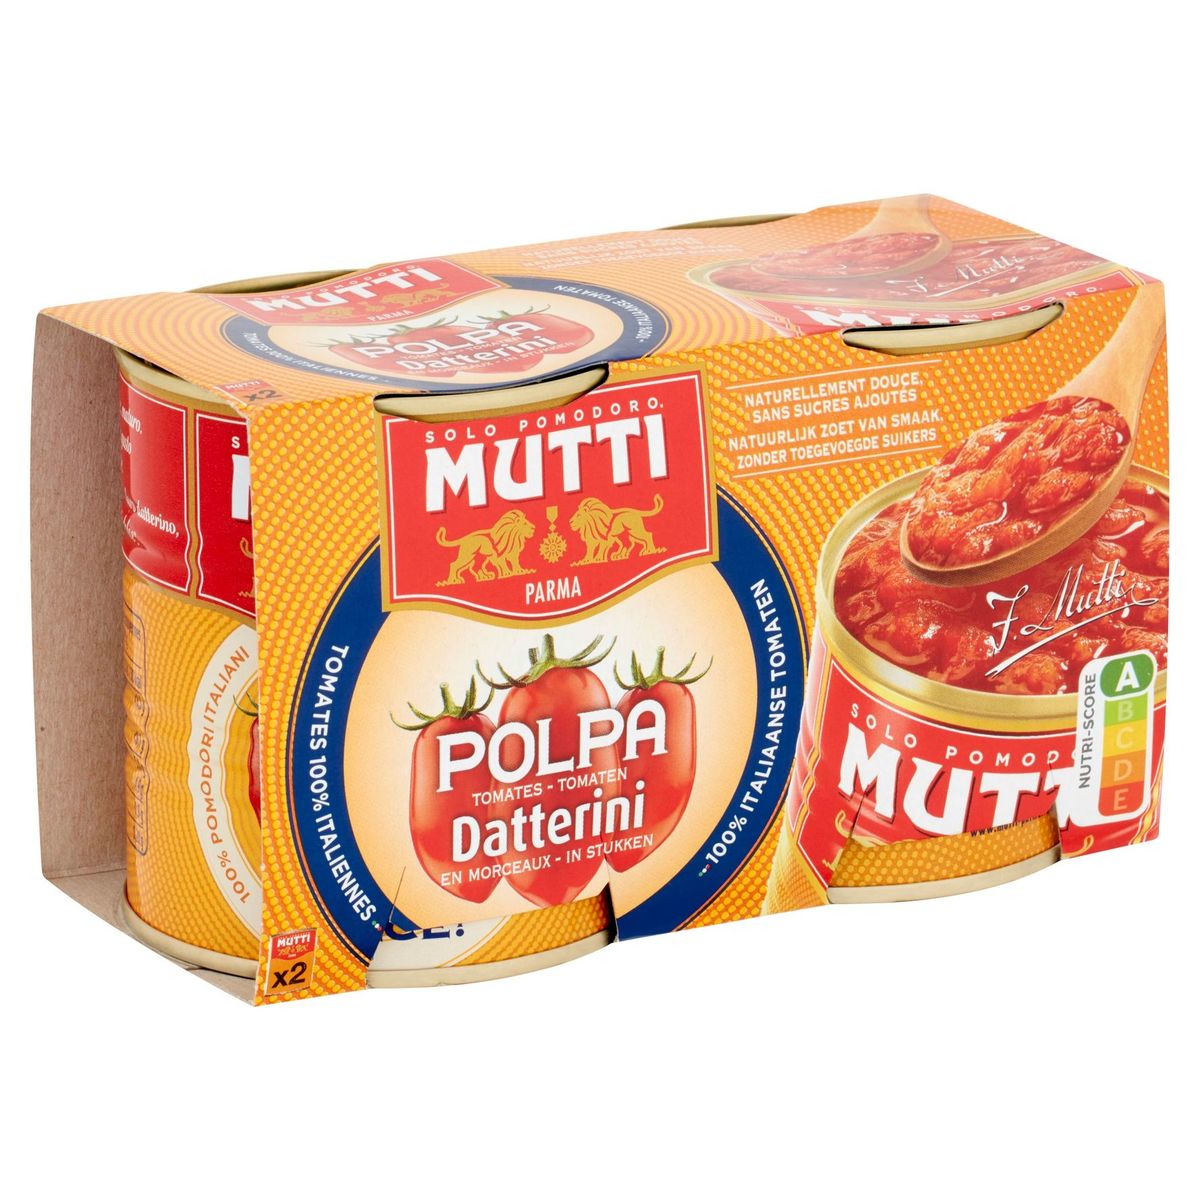 Mutti Polpa Tomaten Datterini in Stukken 2 x 300 g